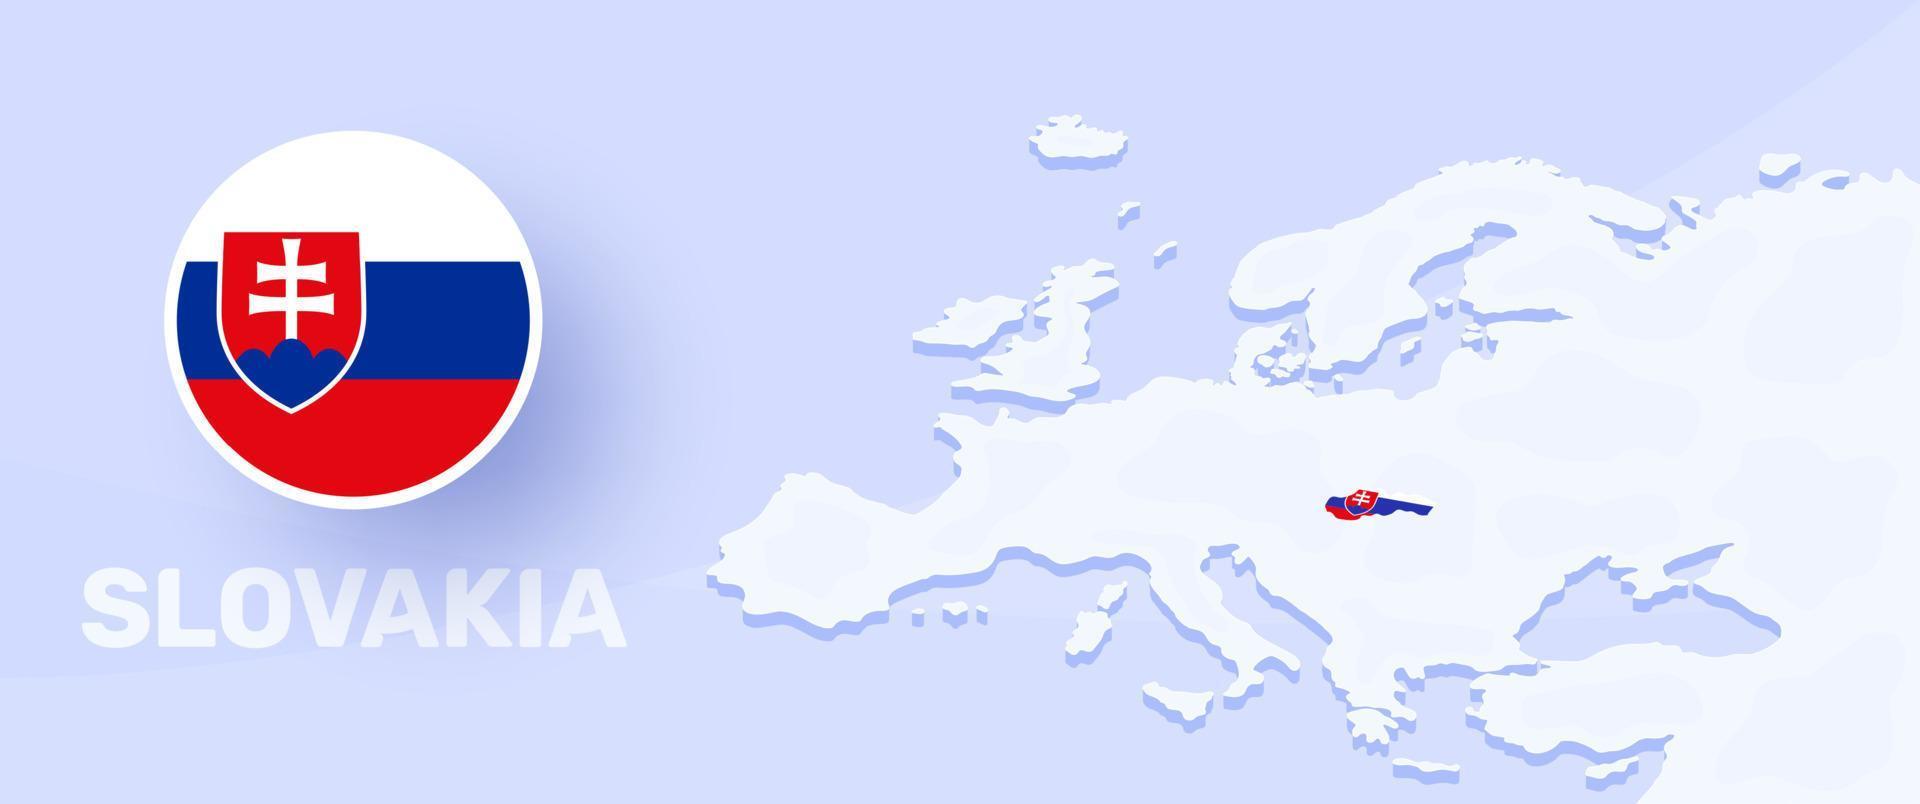 bandera de la bandera del mapa de eslovaquia. ilustración vectorial con un mapa de europa y país resaltado con bandera nacional vector